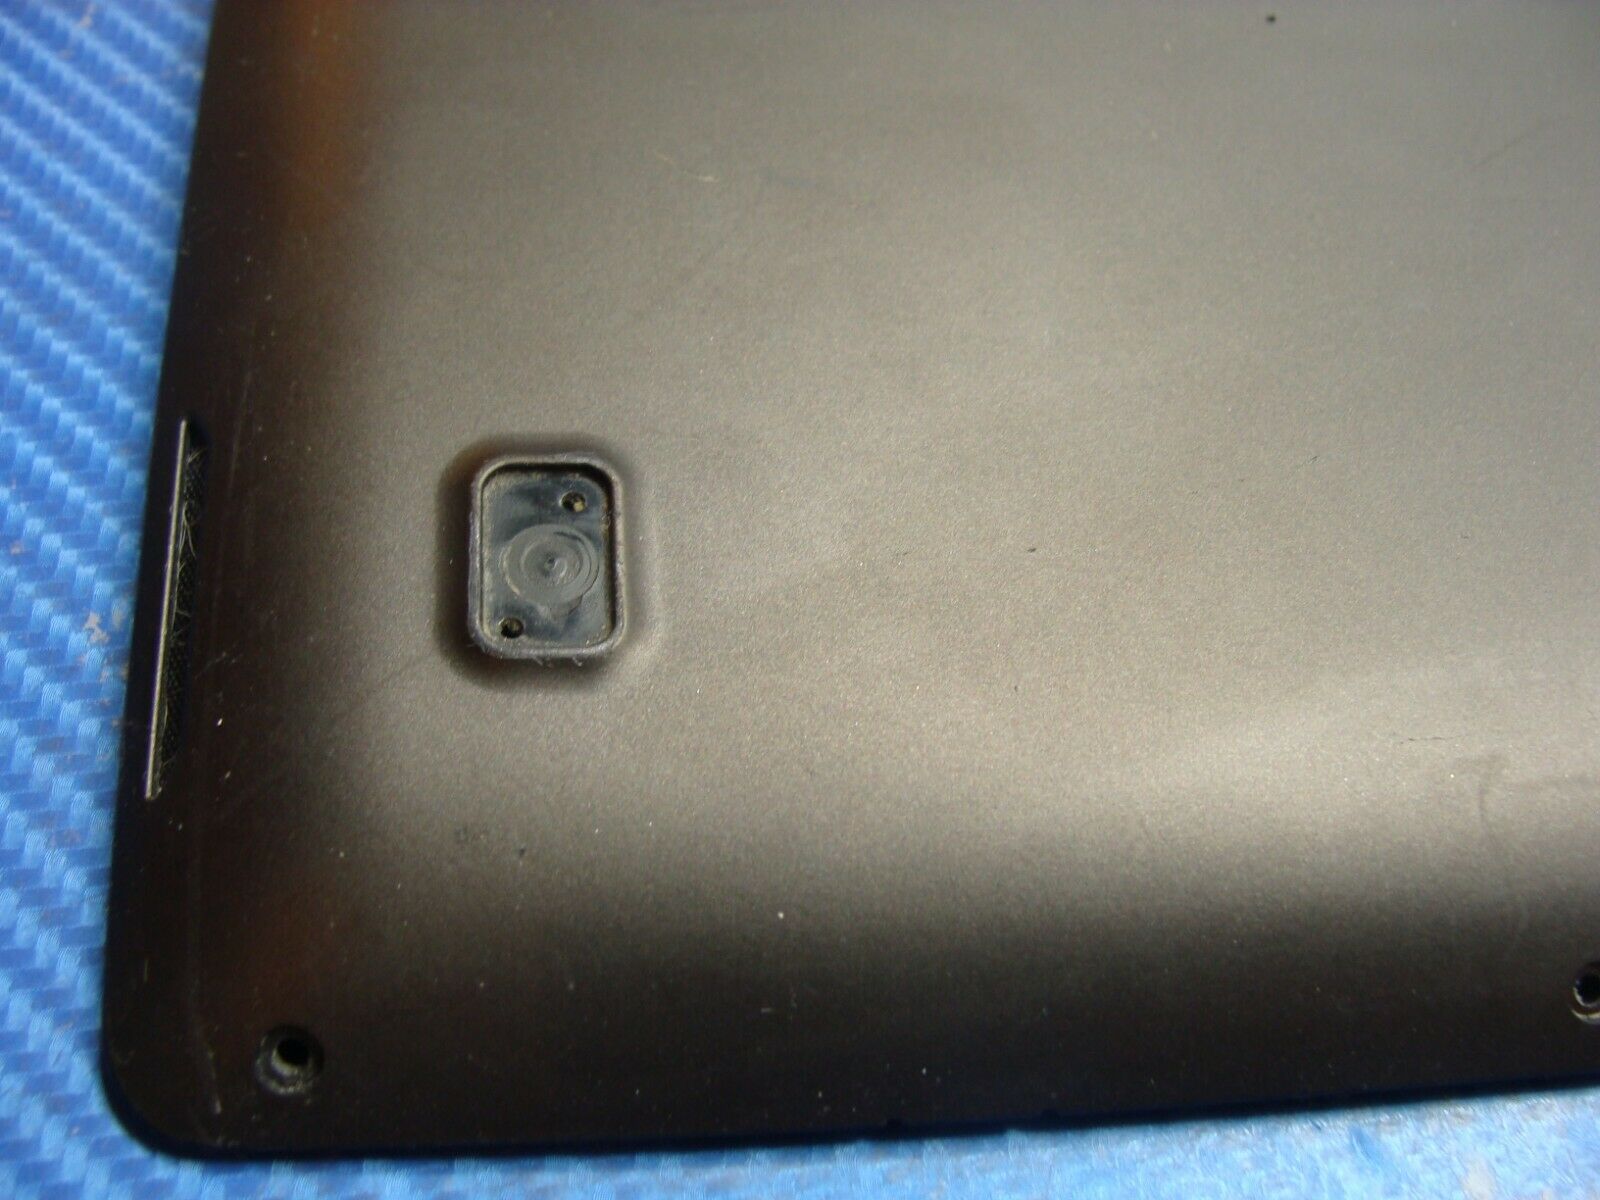 Asus VivoBook X202E 11.6